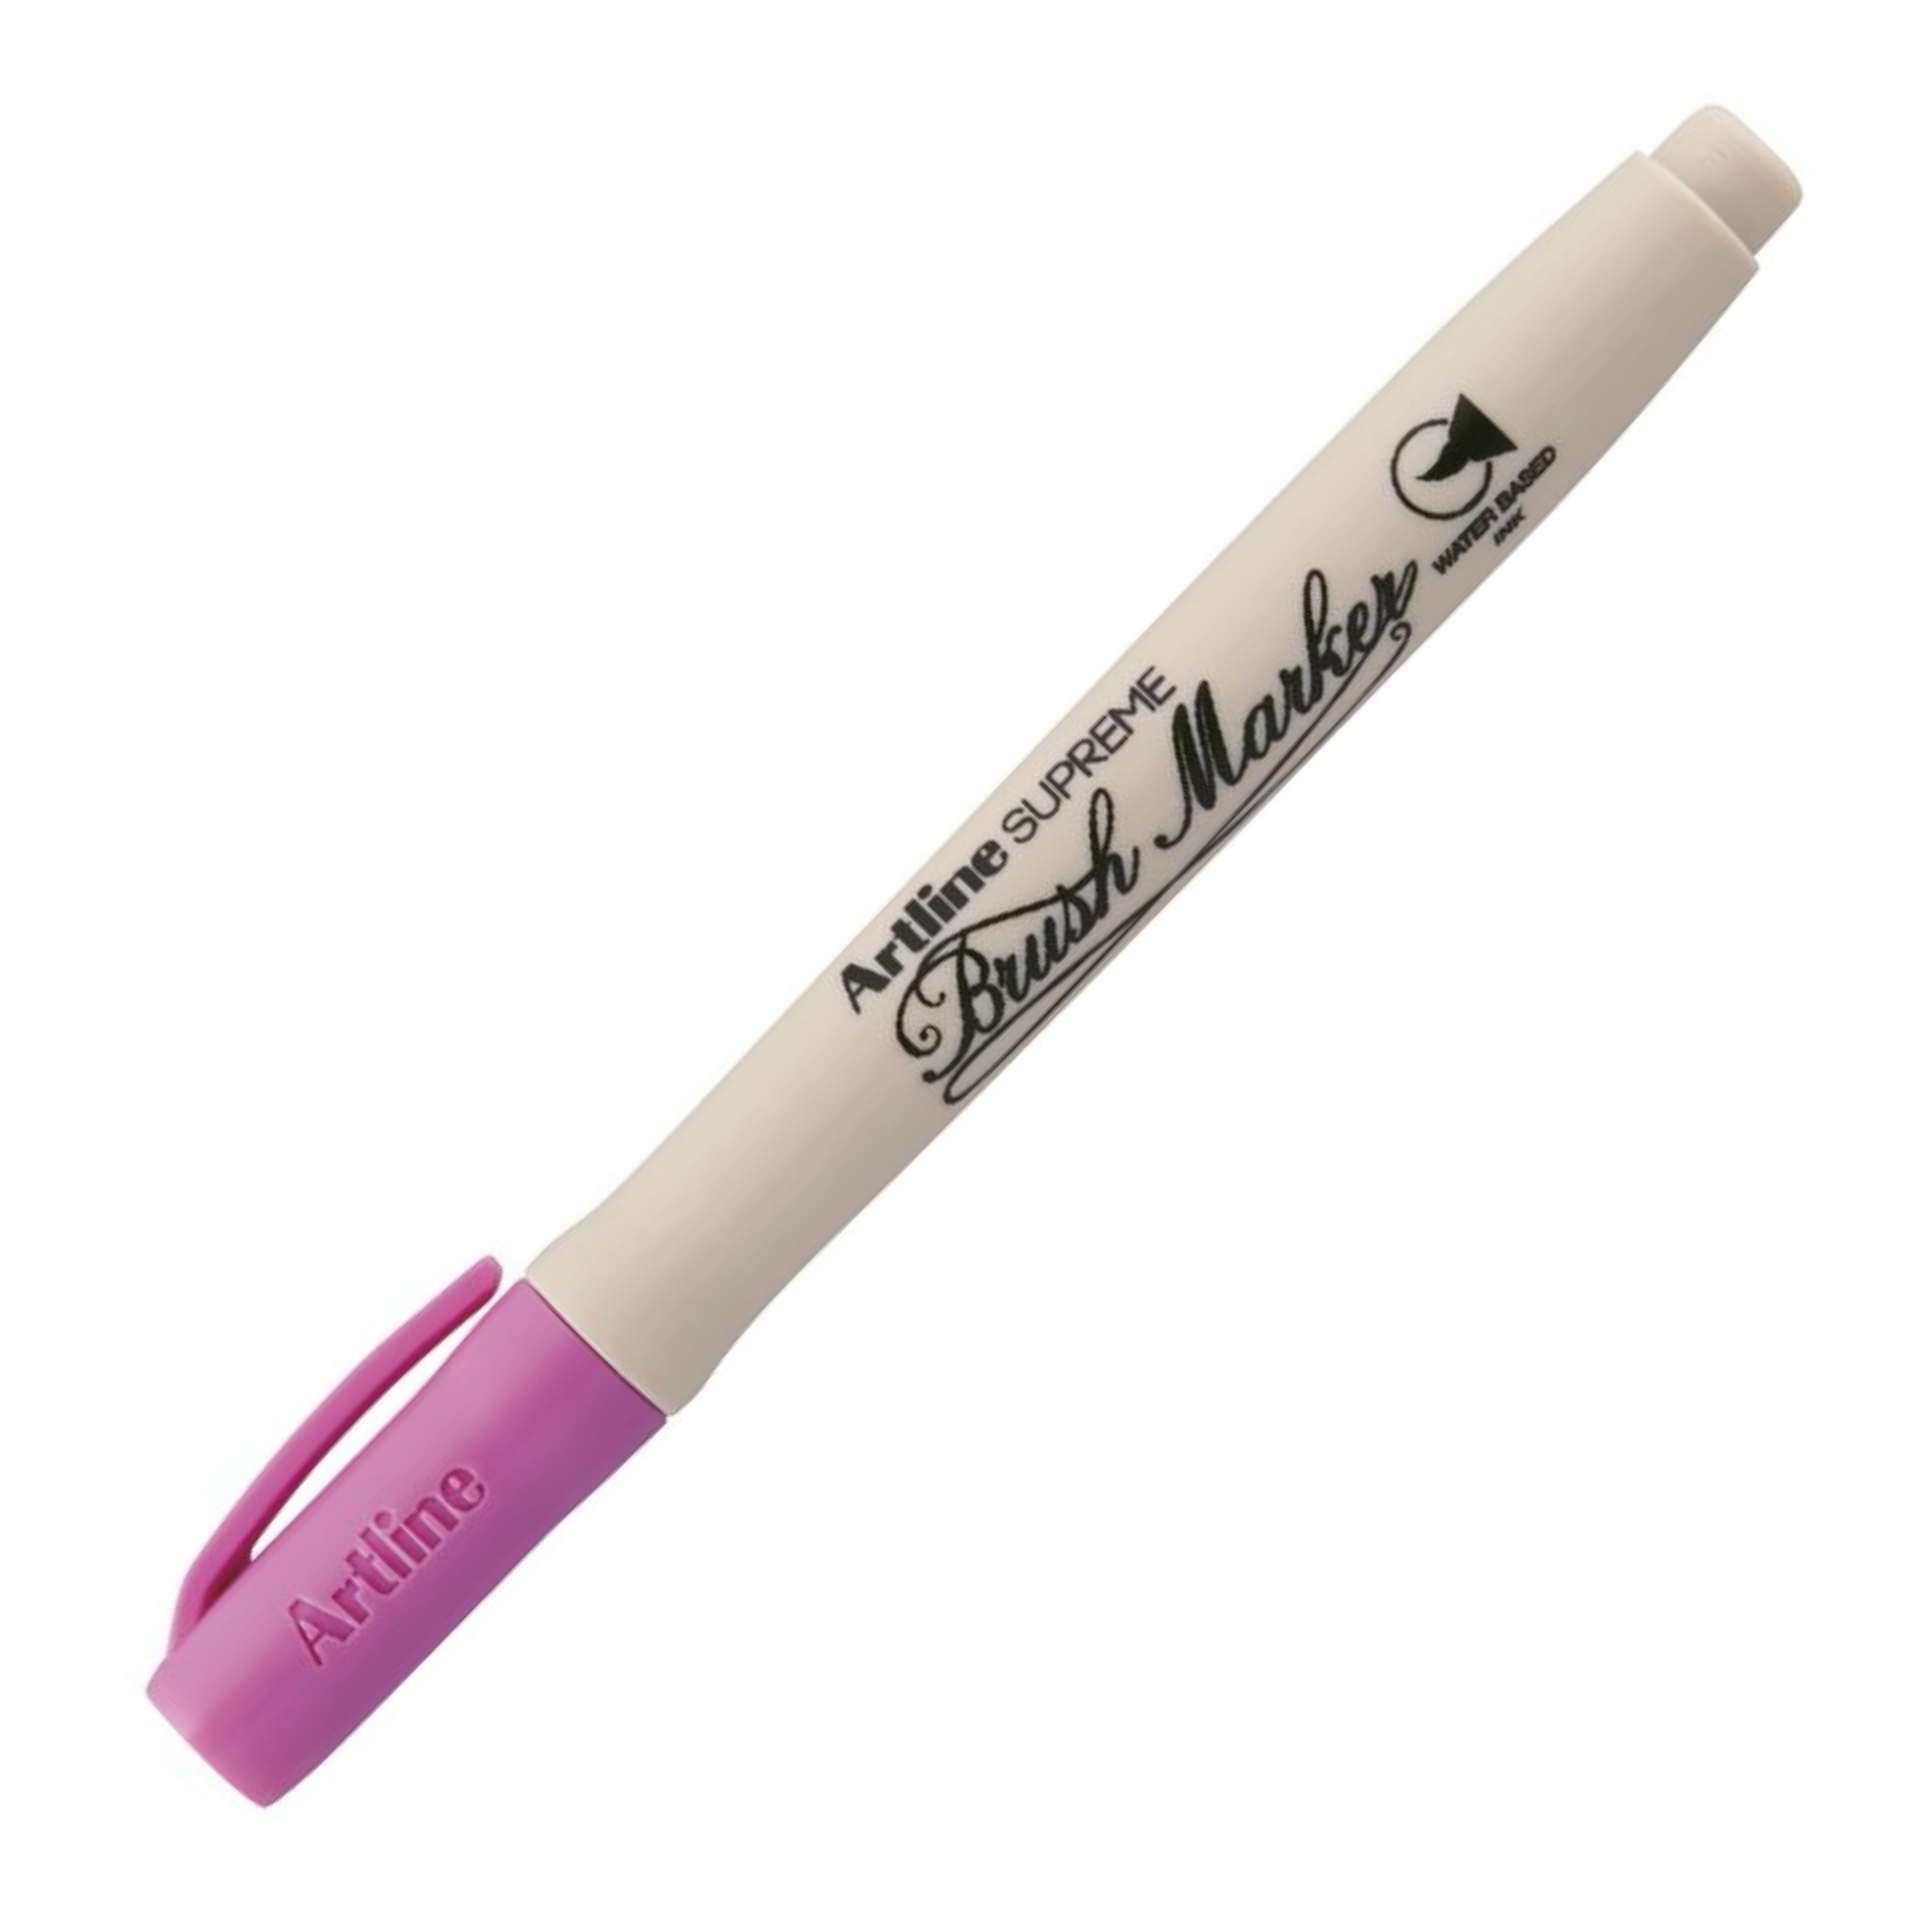 Artline Supreme Brush Marker Pen Pink Colour Marker Pack of 1